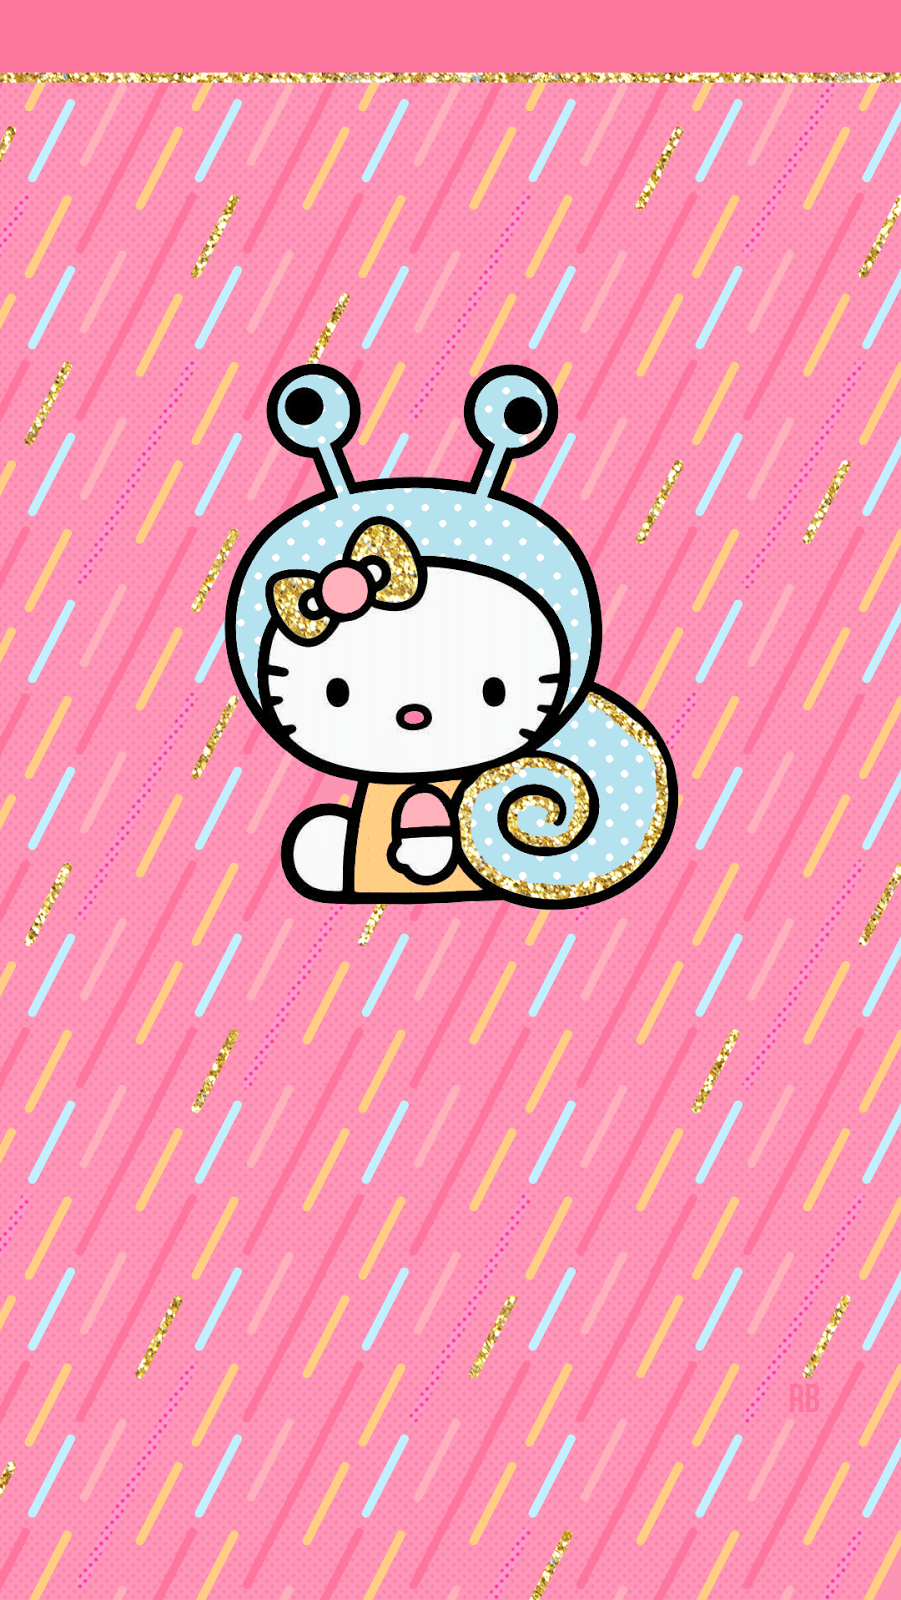 Girly Hello Kitty Wallpapers - Top Những Hình Ảnh Đẹp